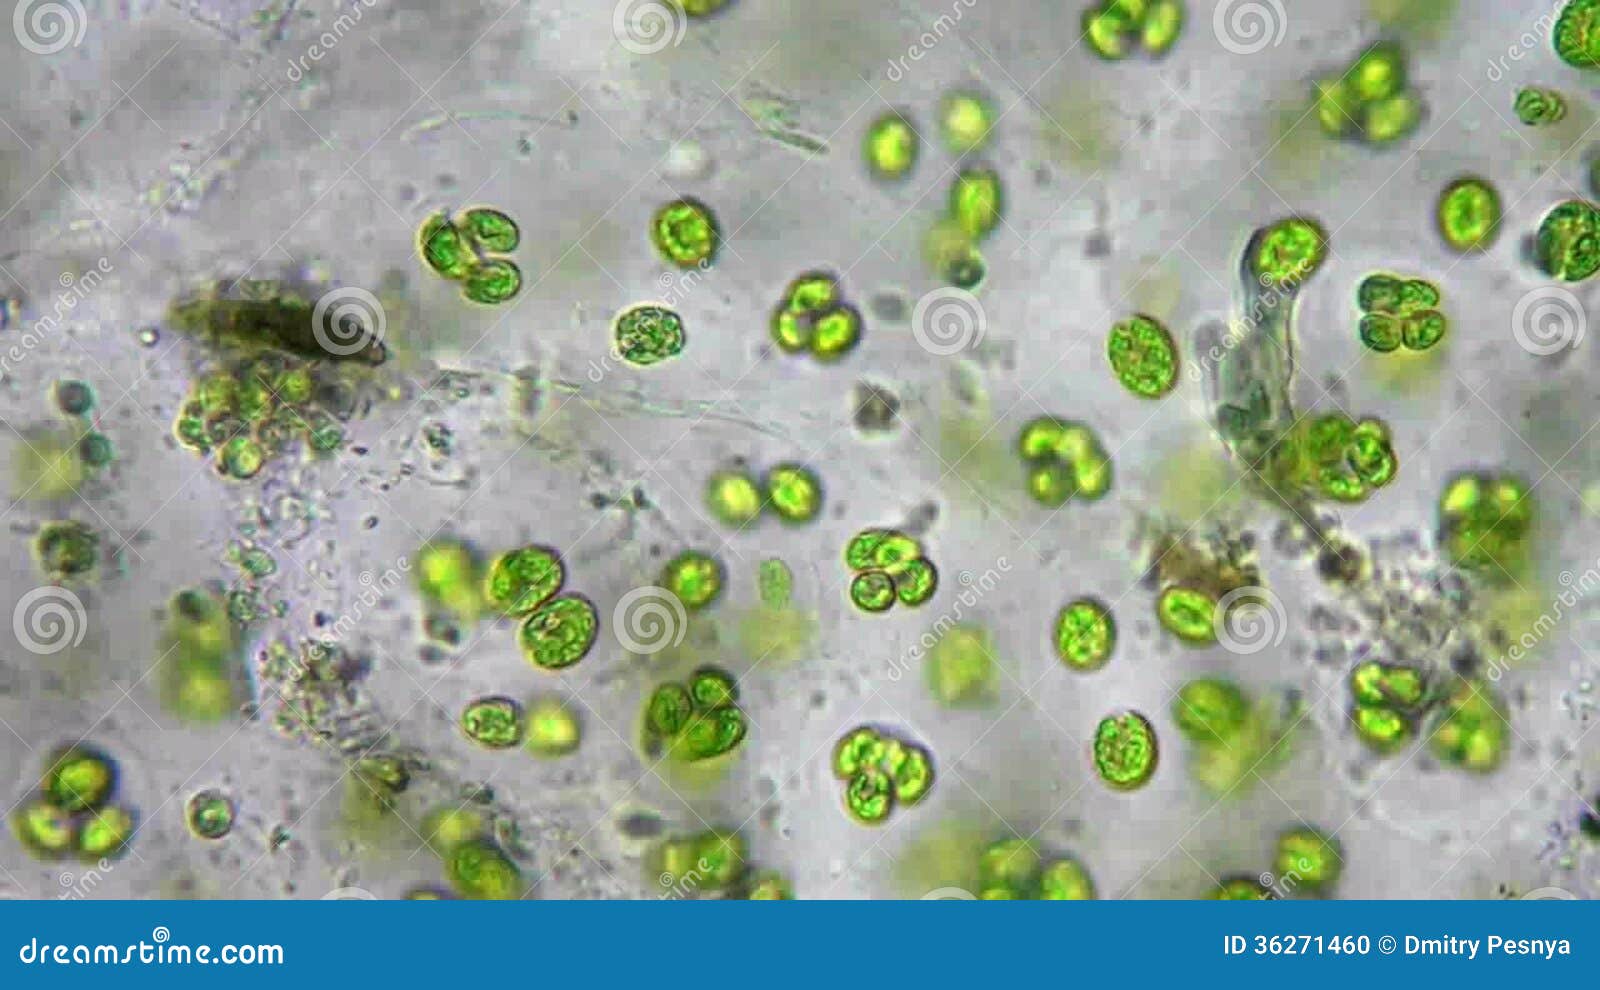 Бактерии в соленой воде. Микроводоросли микробиология. Микроорганизмы в воде под микроскопом. Микроорганизмы в капле воды. Водные микроорганизмы под микроскопом.